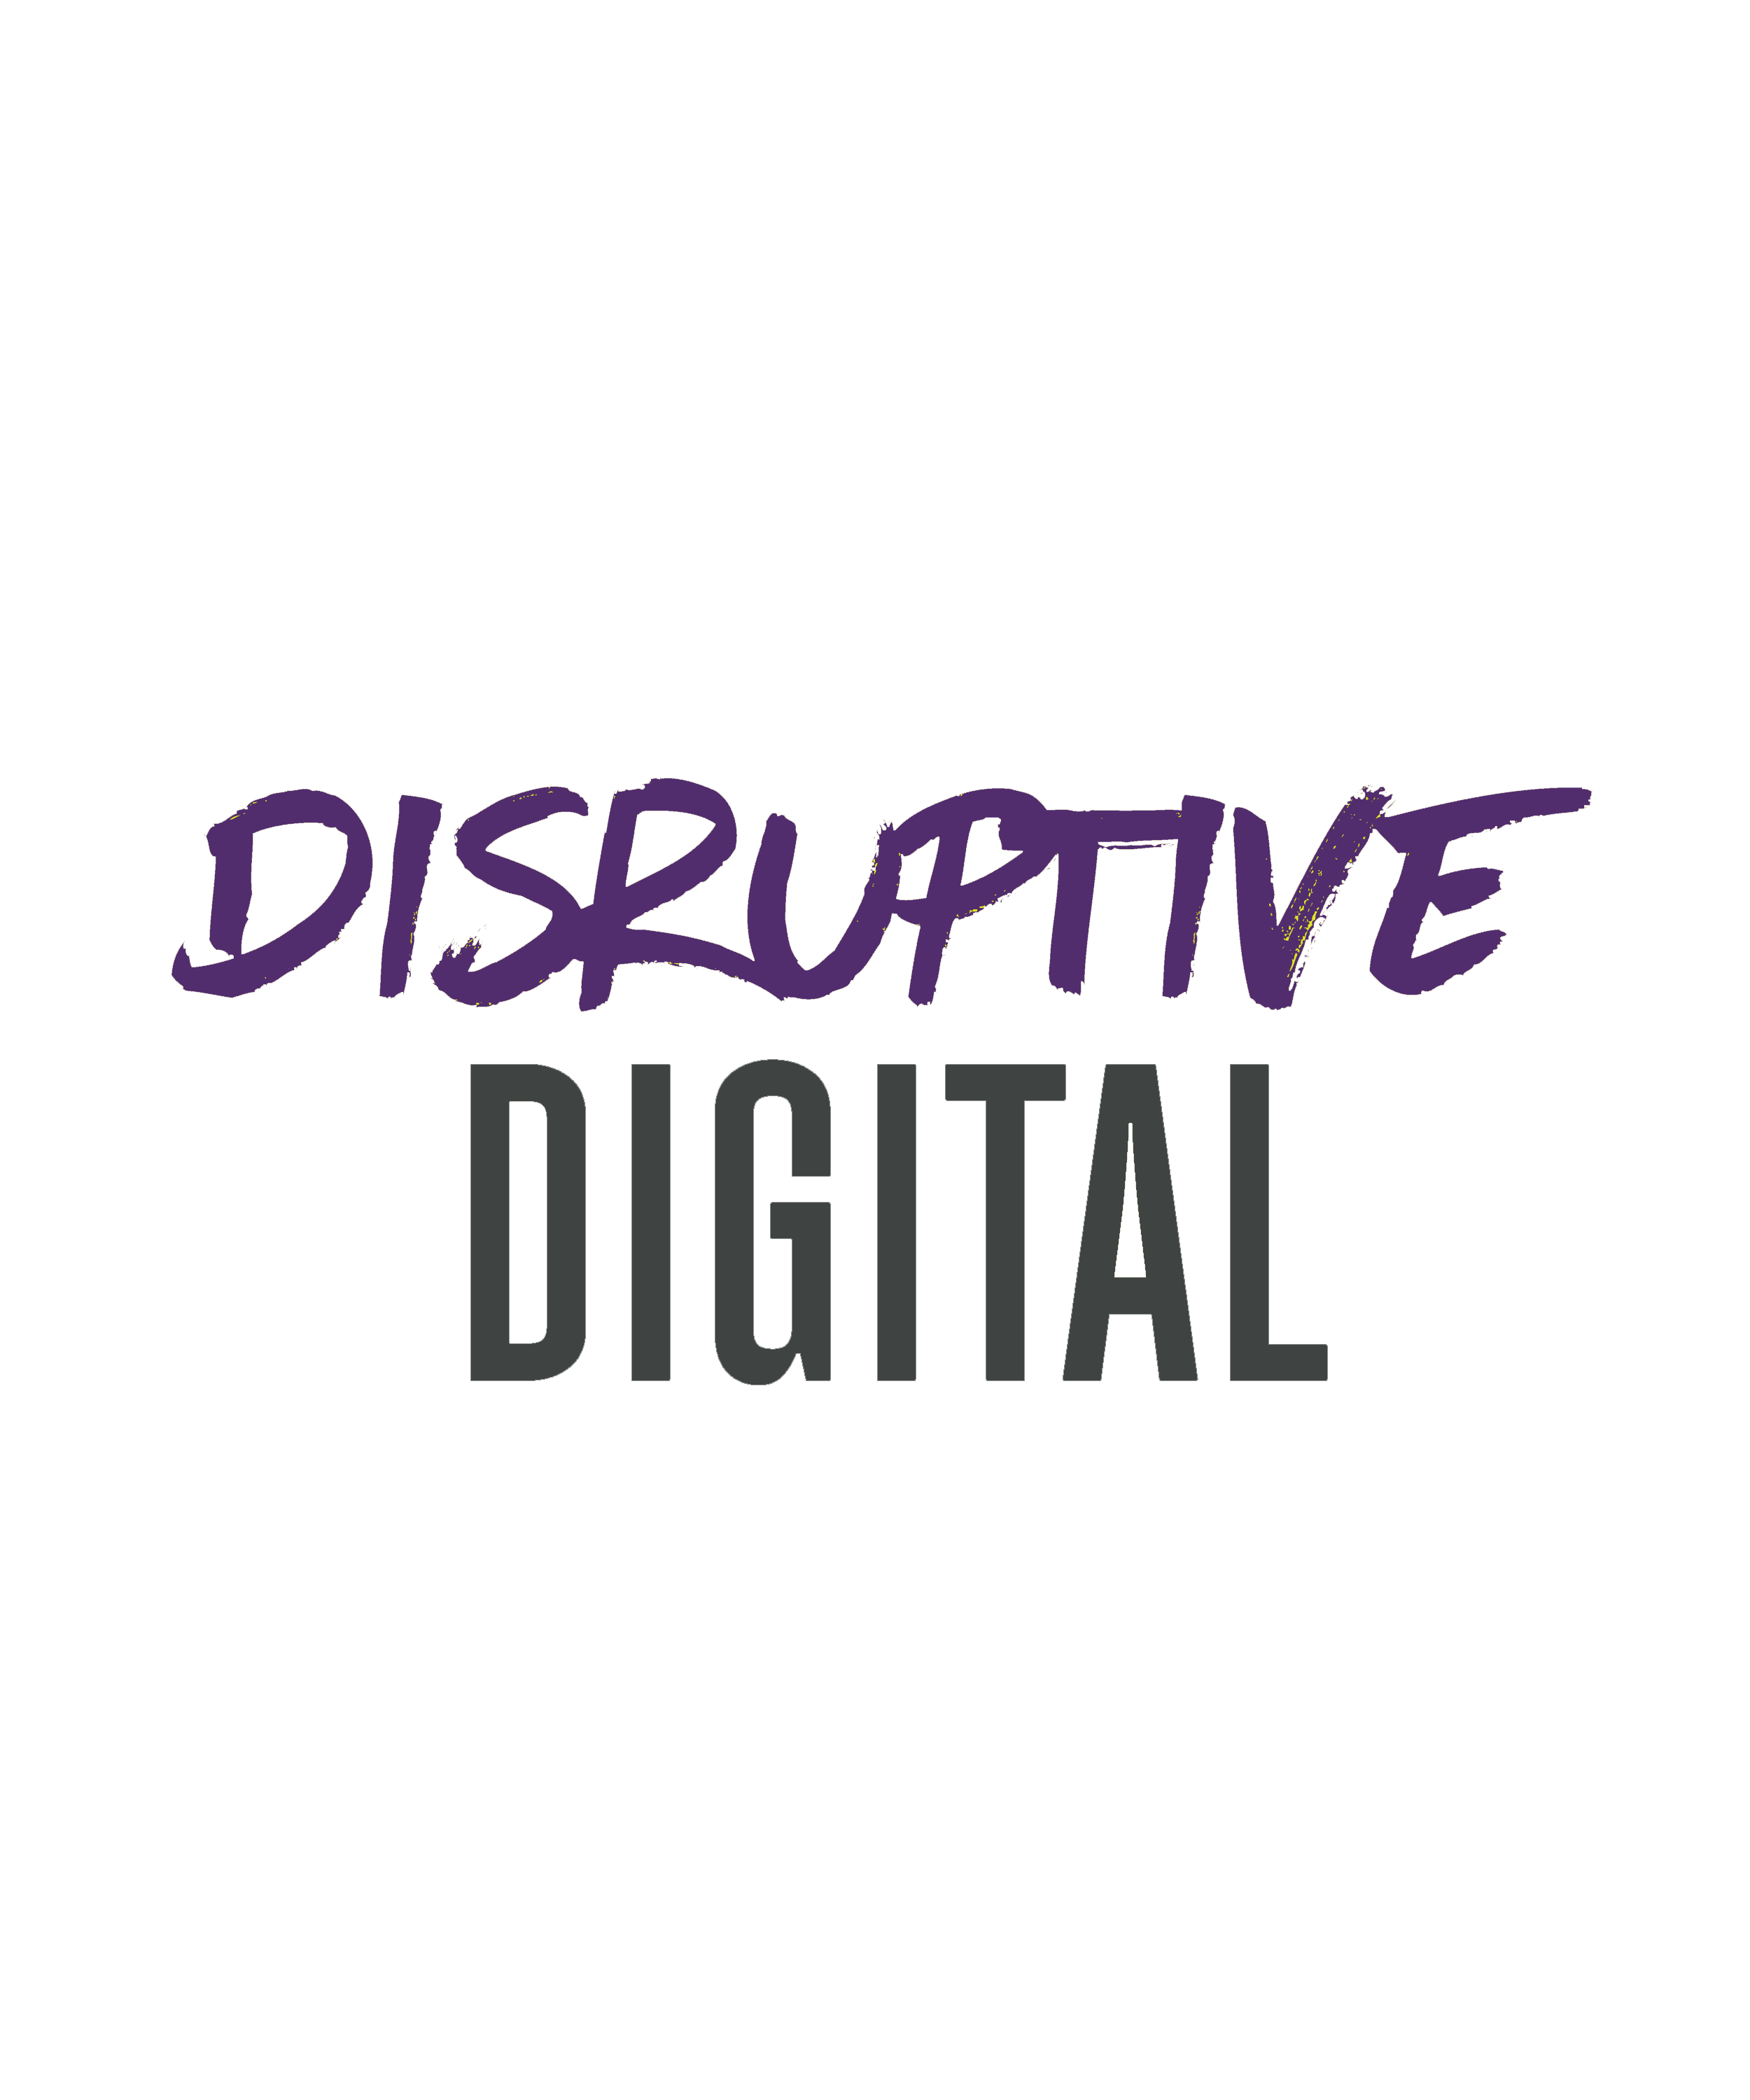 Disruptive digital Tile